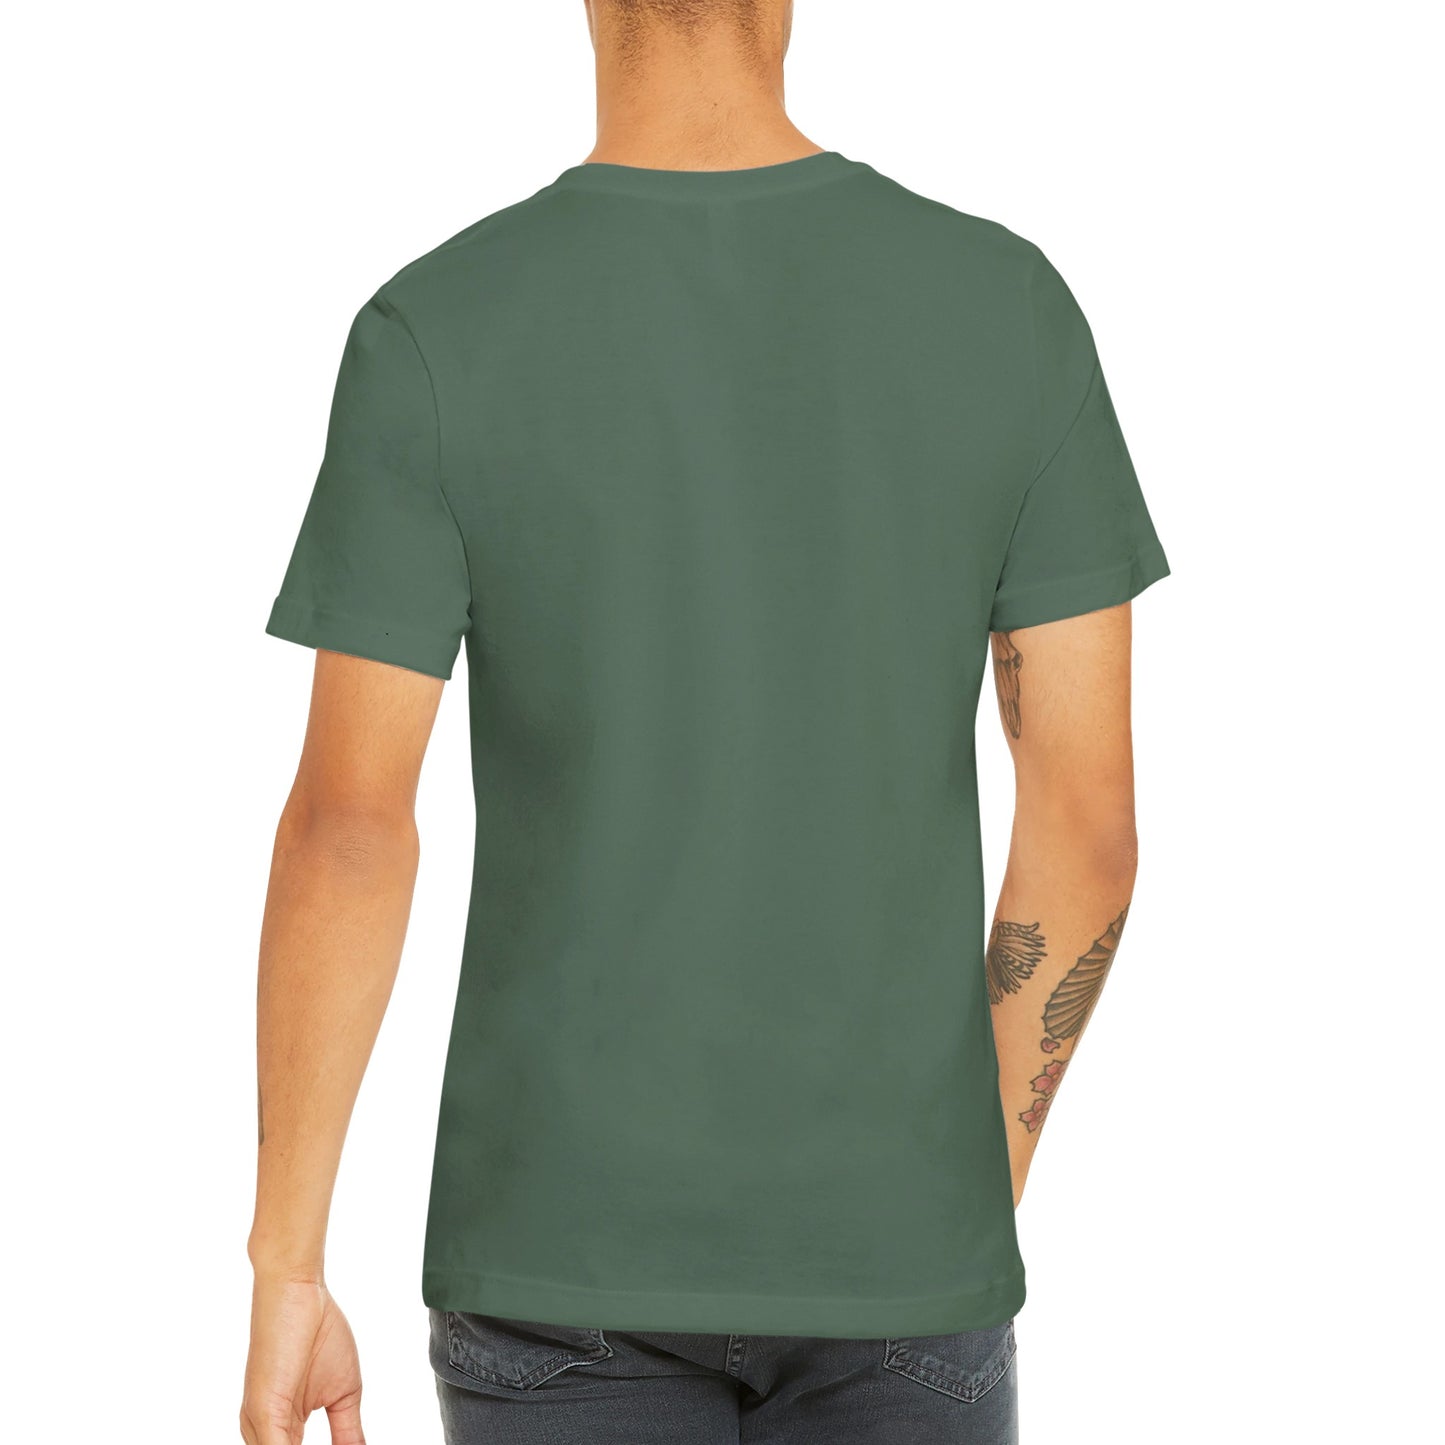 Günstiges Unisex-T-Shirt mit Rundhalsausschnitt/The Walking Dad